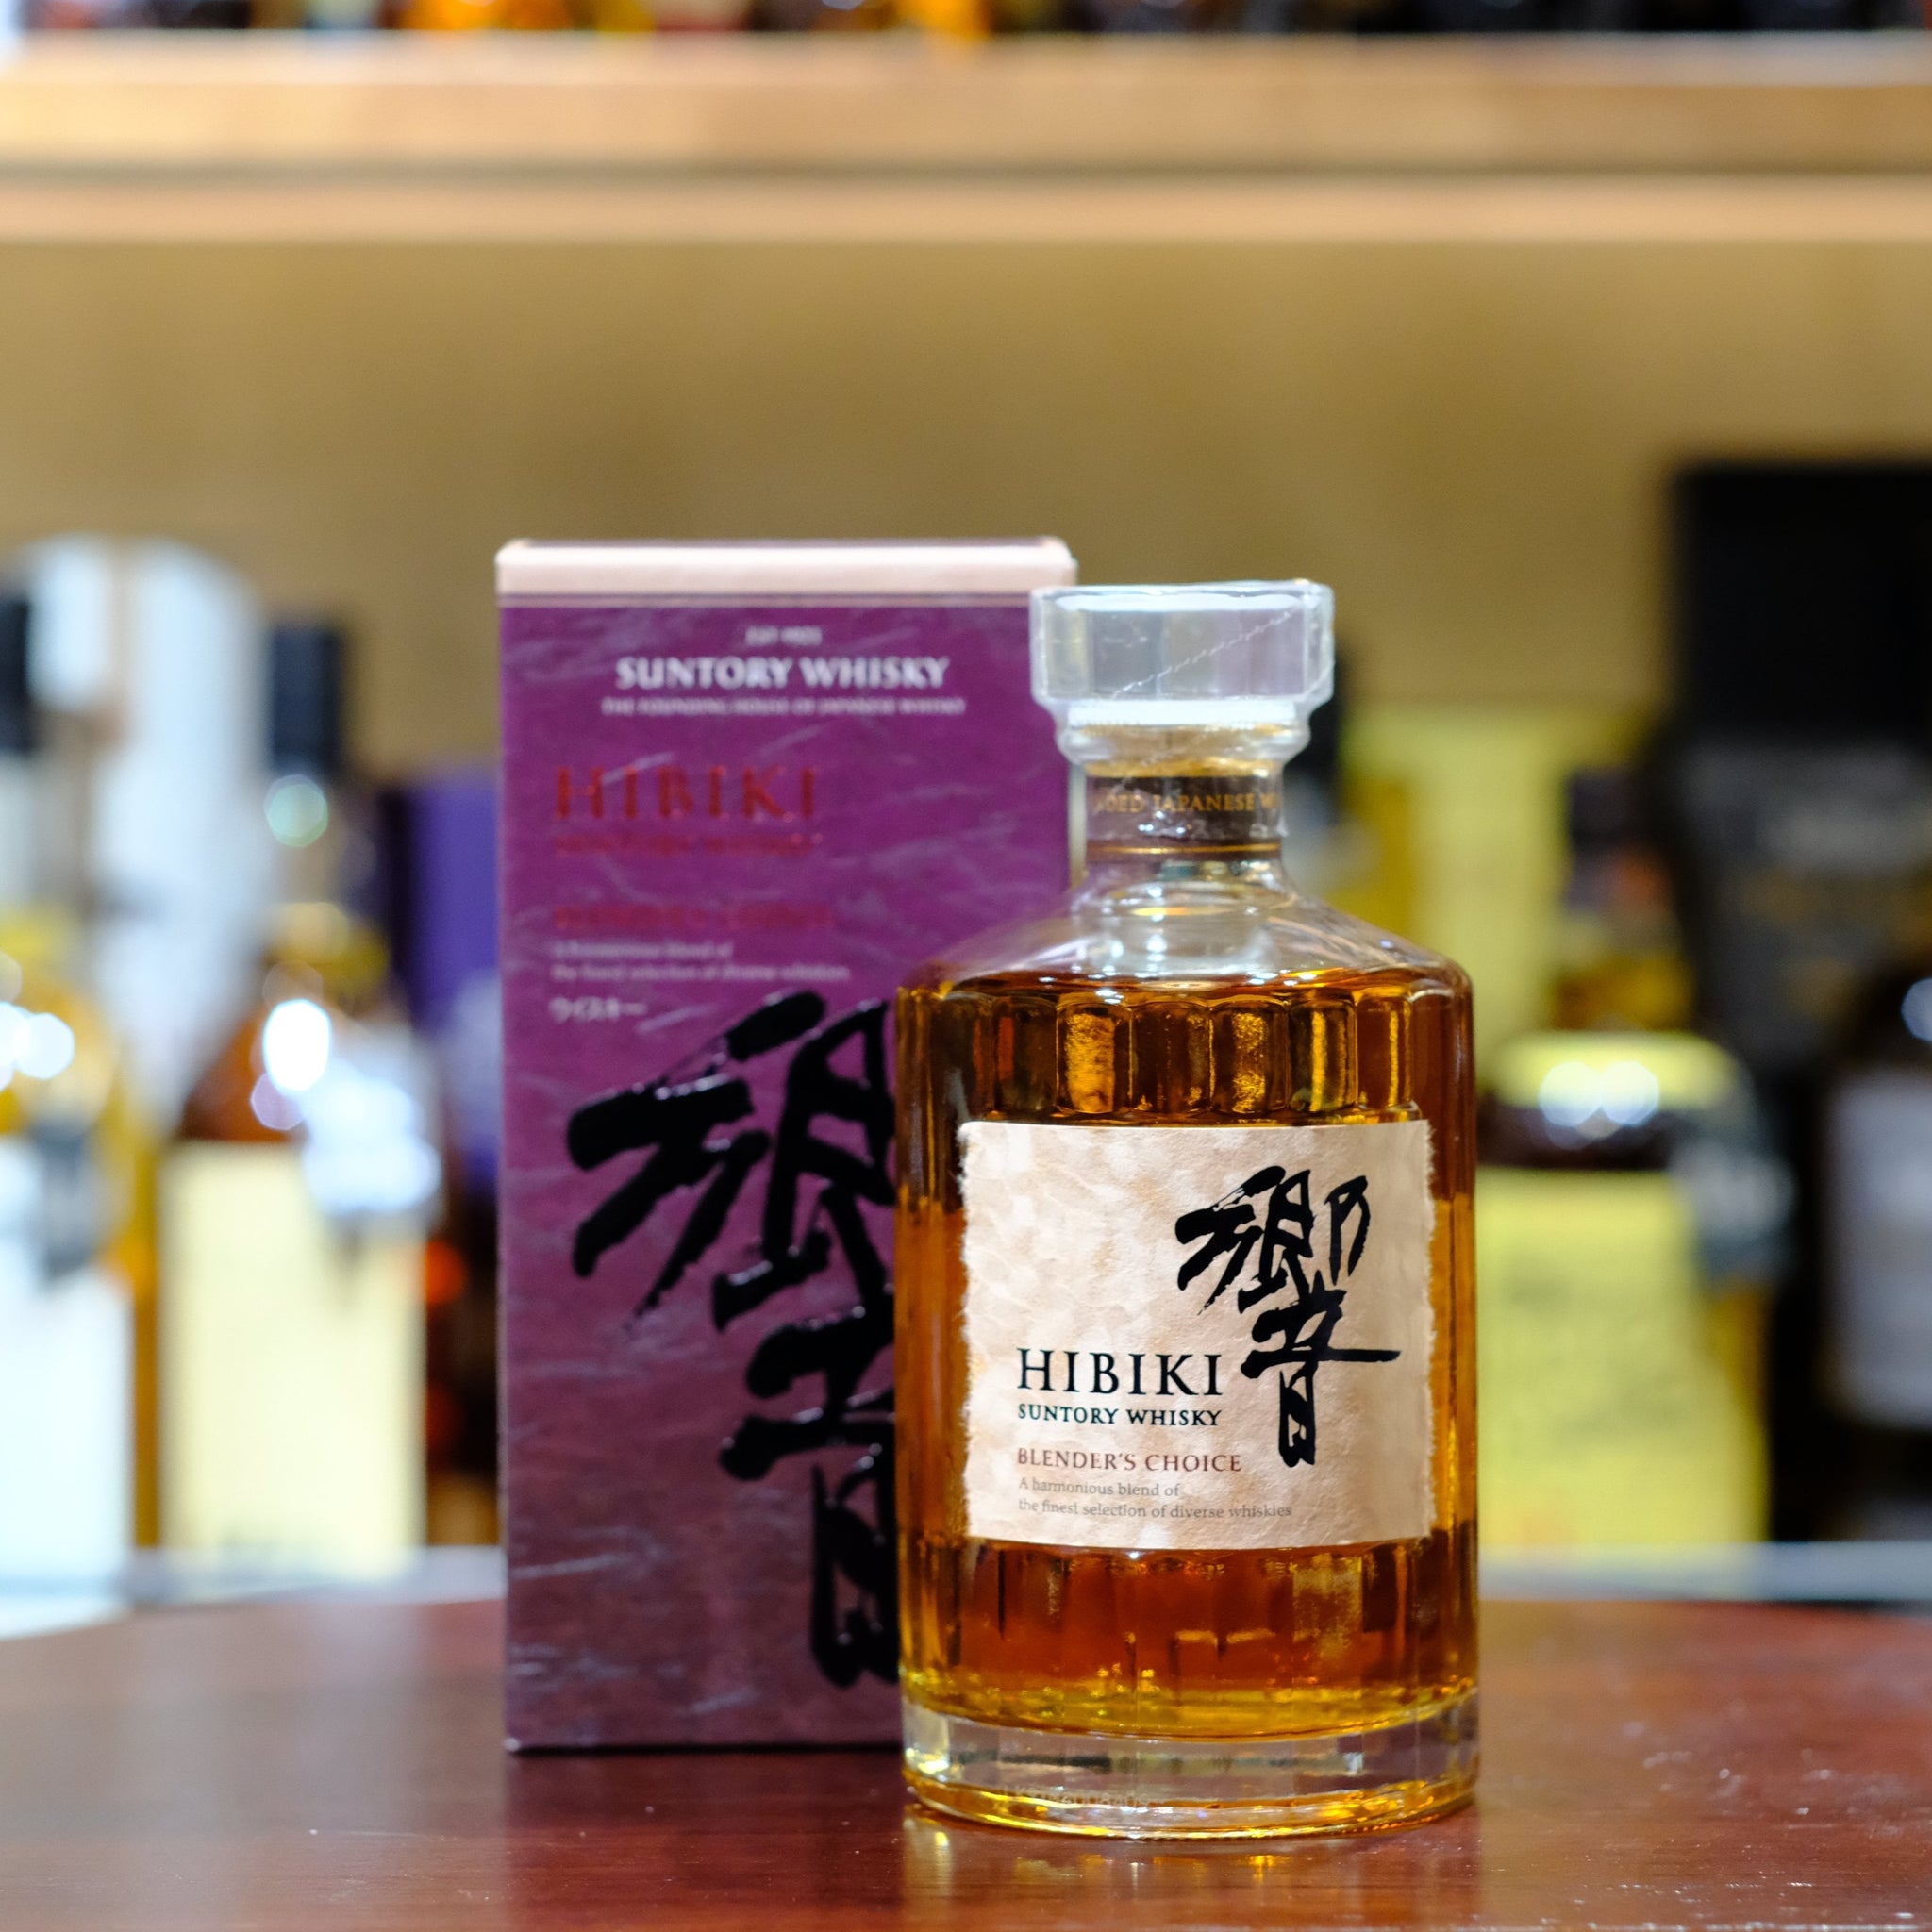 Hibiki Blender's Choice Blended Japanese Whisky